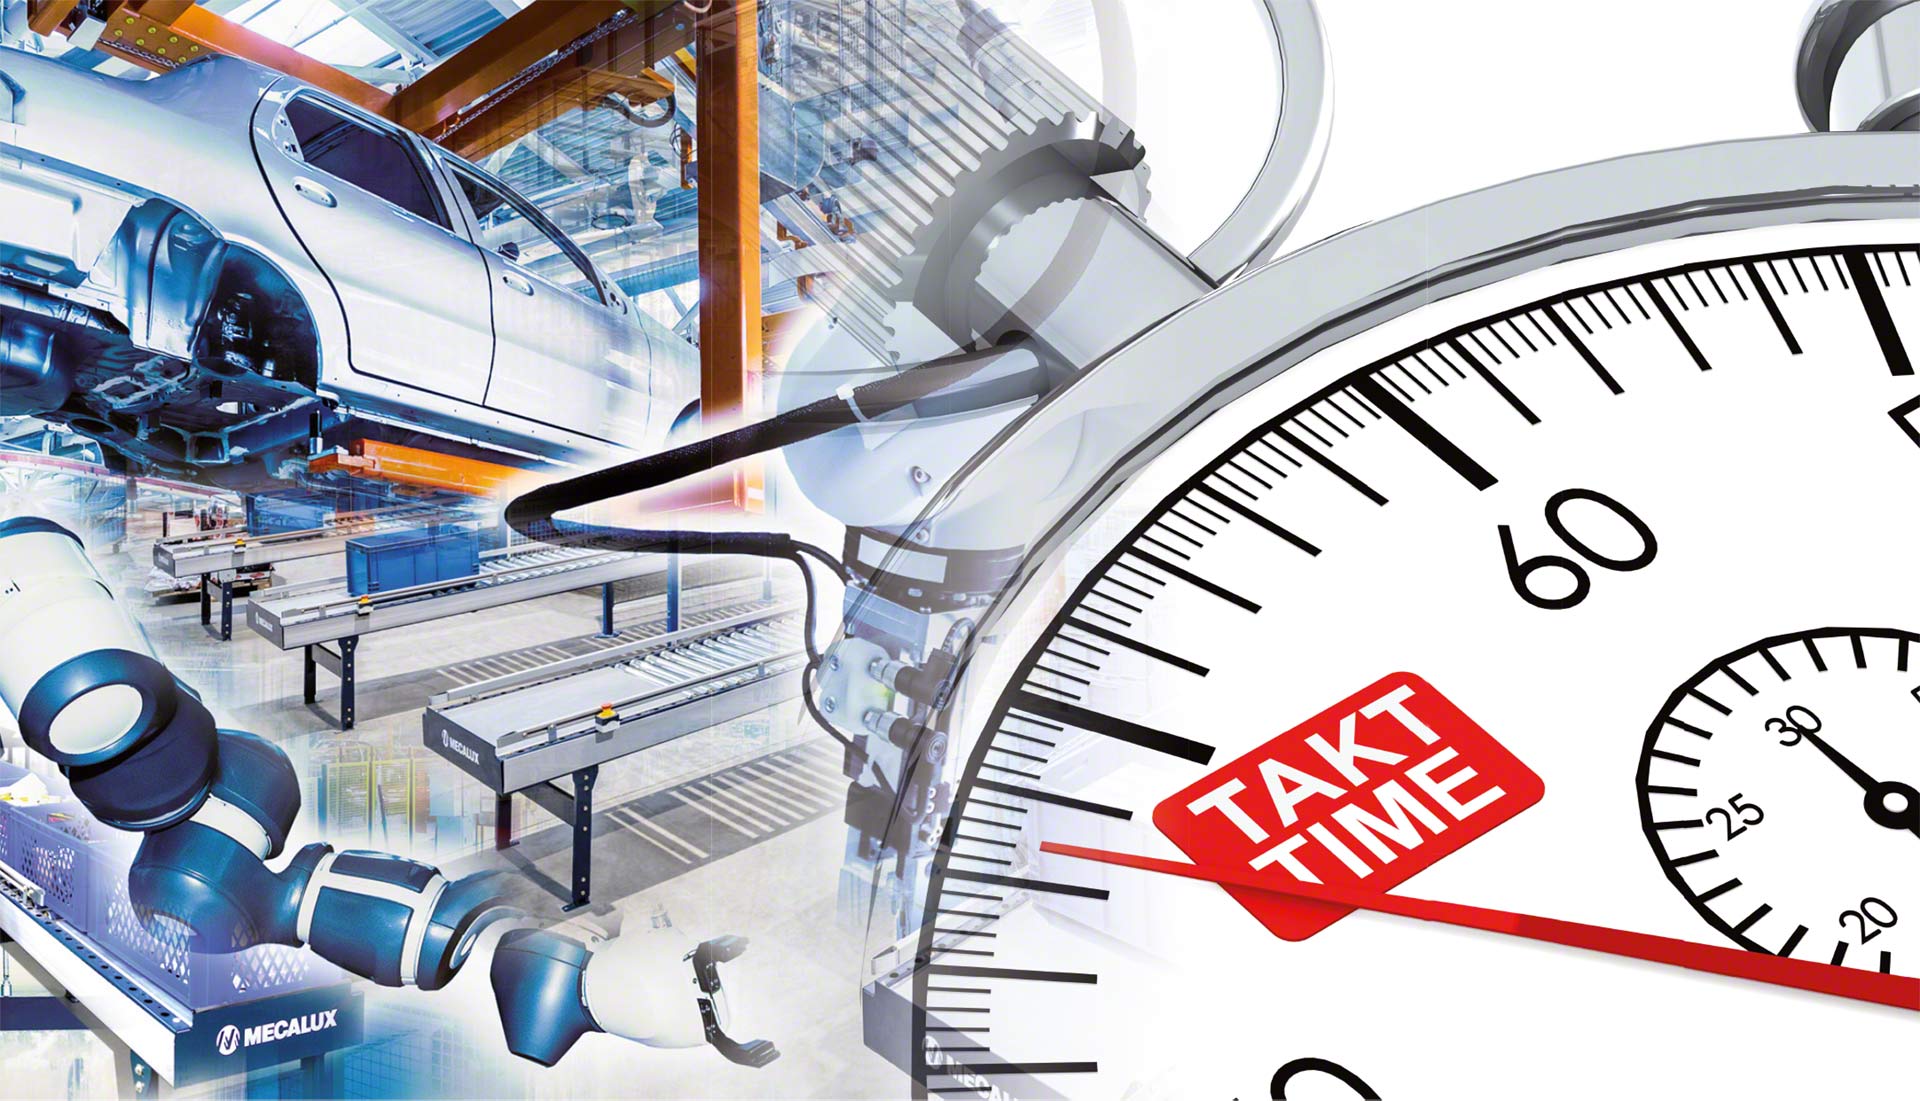 Le Takt Time calcule le rythme qu'une ligne de production doit maintenir pour répondre à la demande